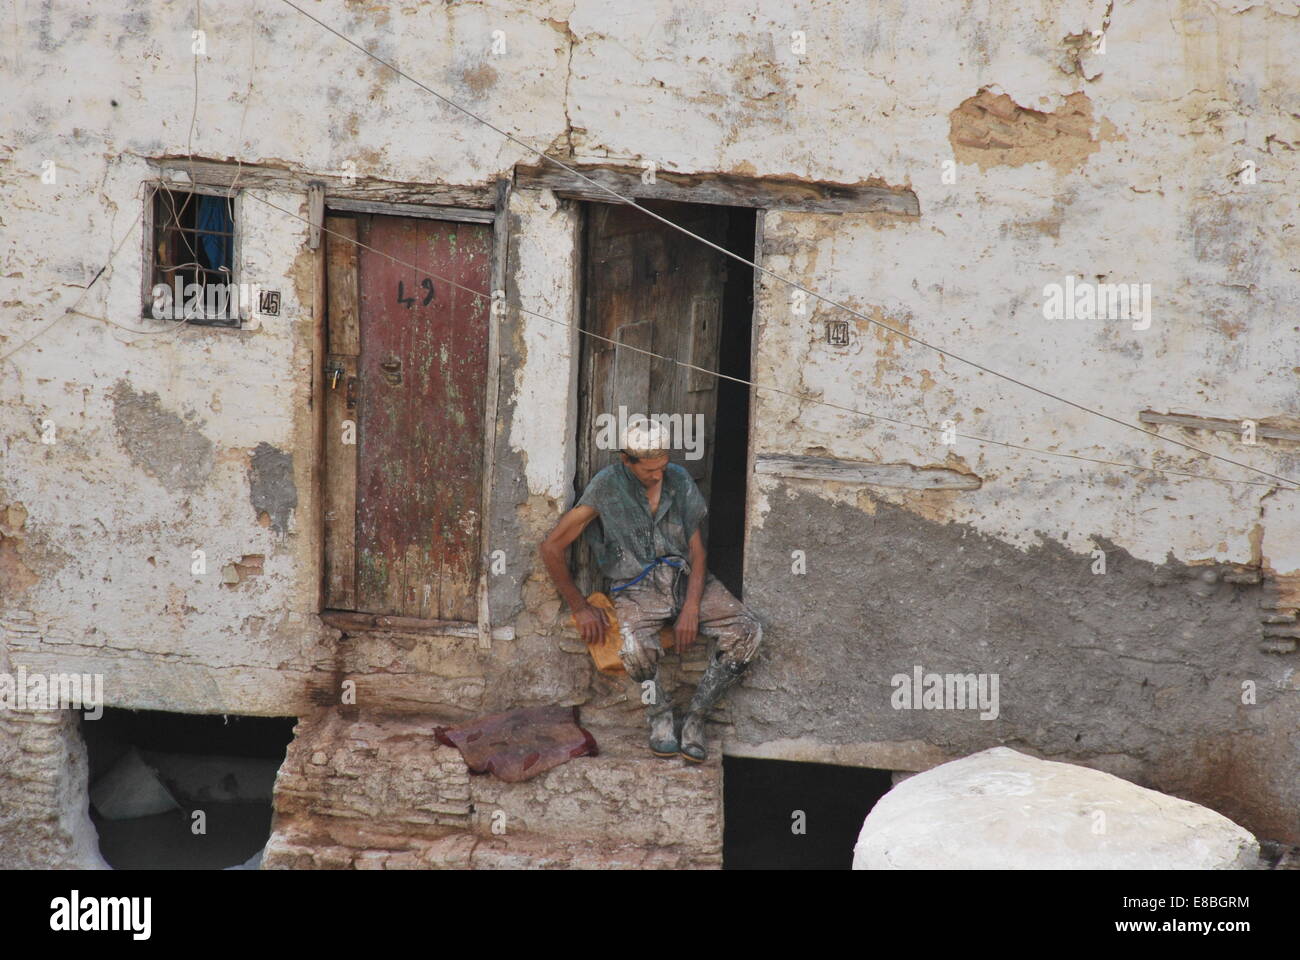 Marokko. Fez. Man ruht in der Tür.  Gerberei. Medina. Die Aushärtung erfolgt färben Skins. Der UNESCO. Natürliche Farbstoffe. touristische Attraktion. Stockfoto